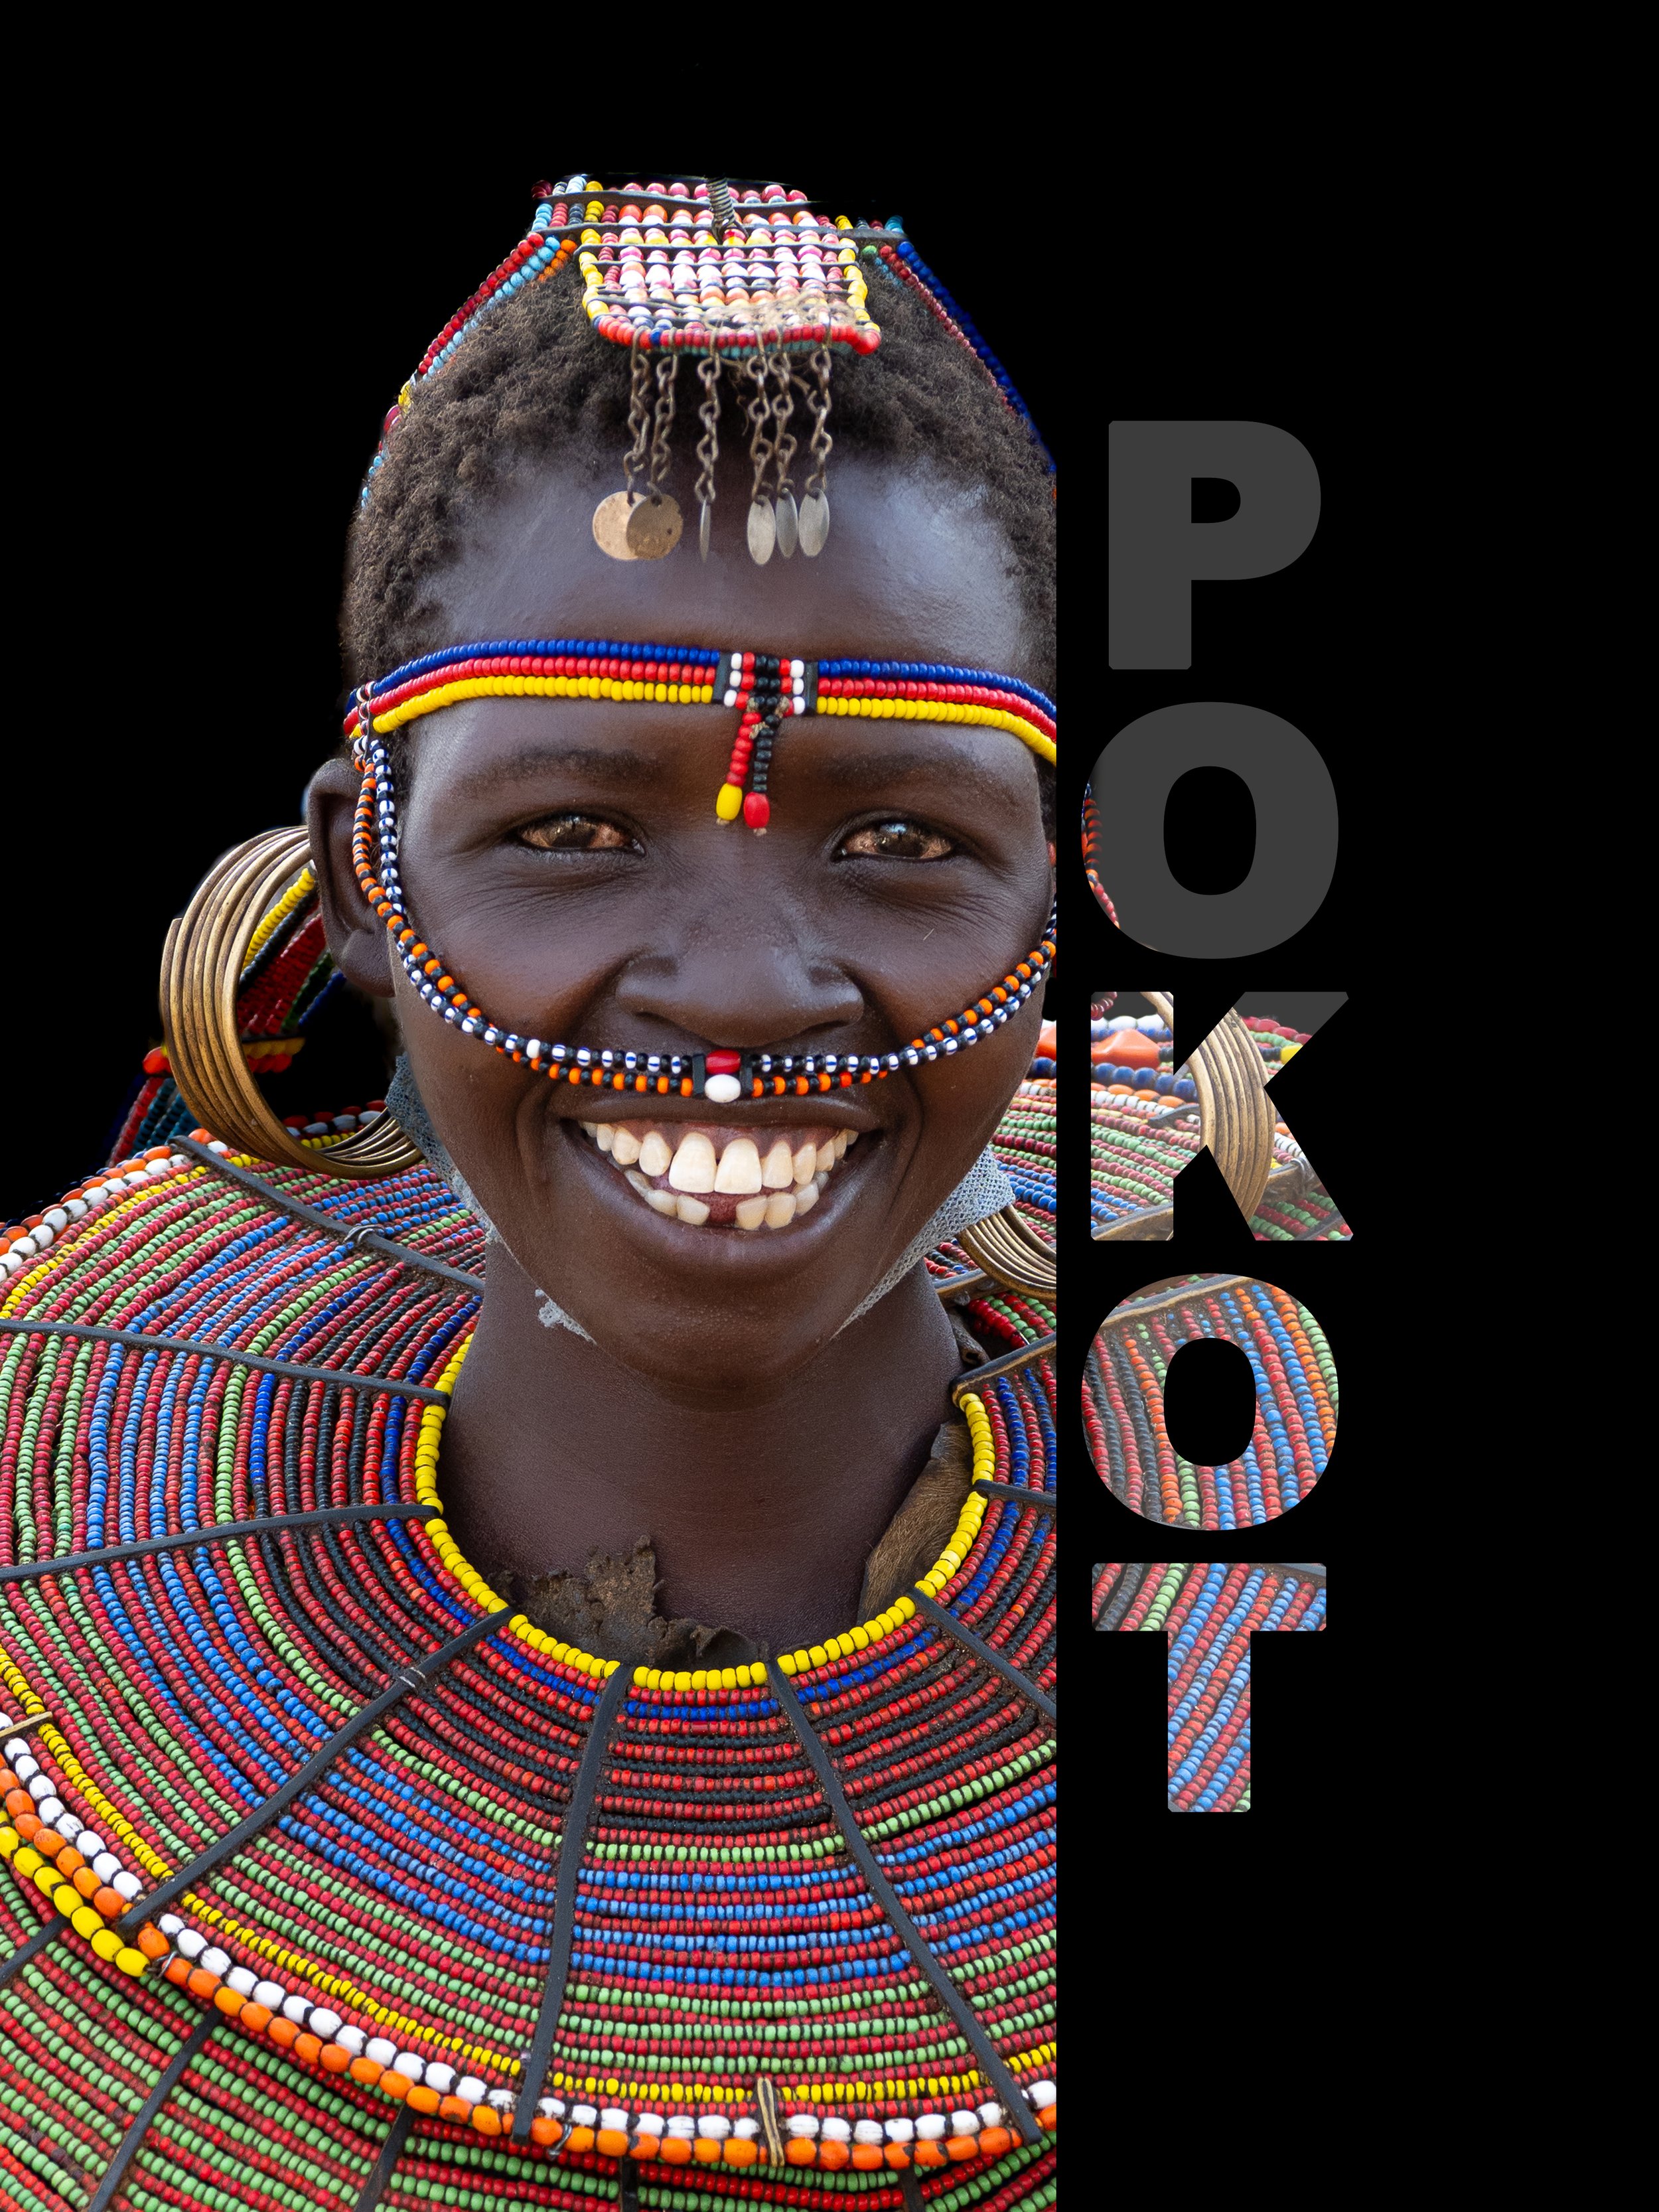 Pokot tribe woman portrait from Kenya tribe photo tours